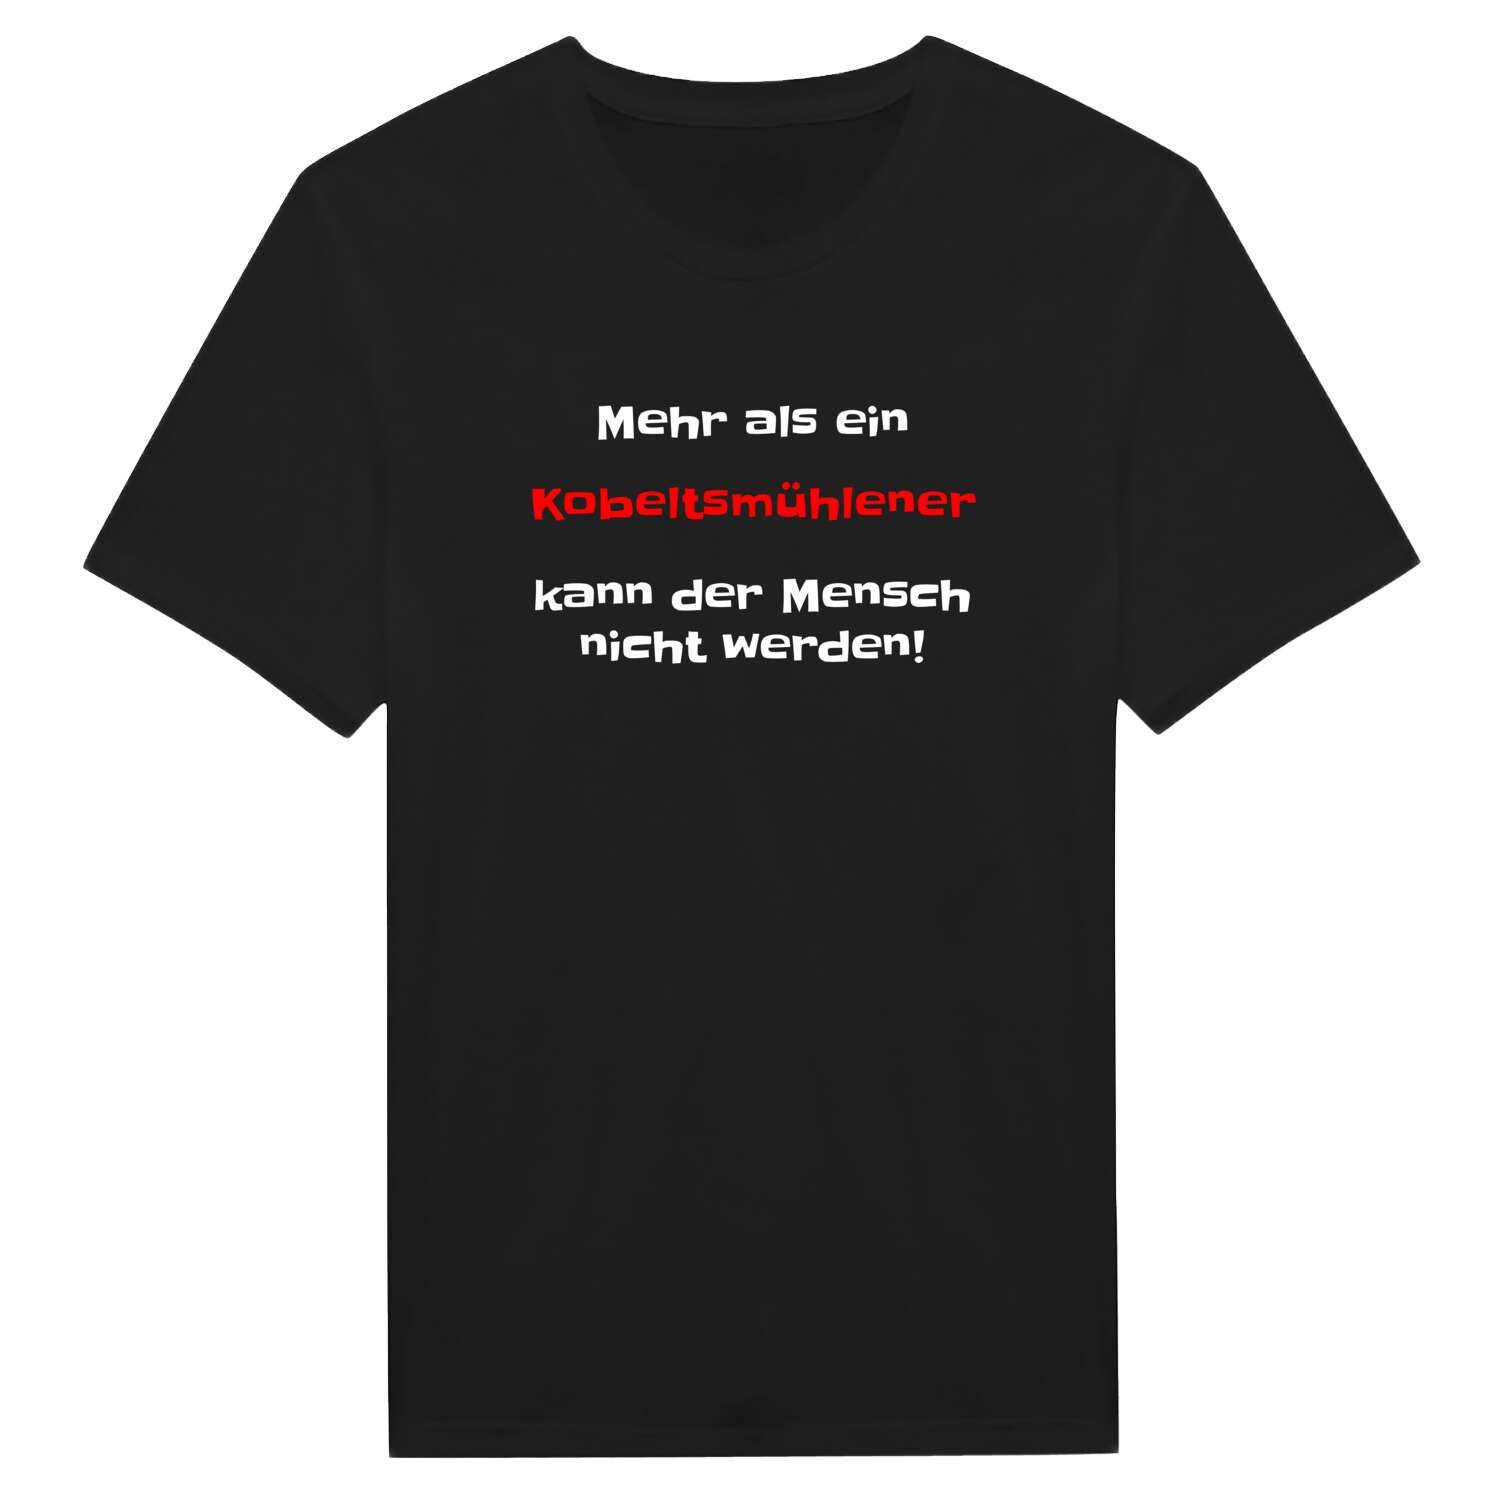 Kobeltsmühle T-Shirt »Mehr als ein«